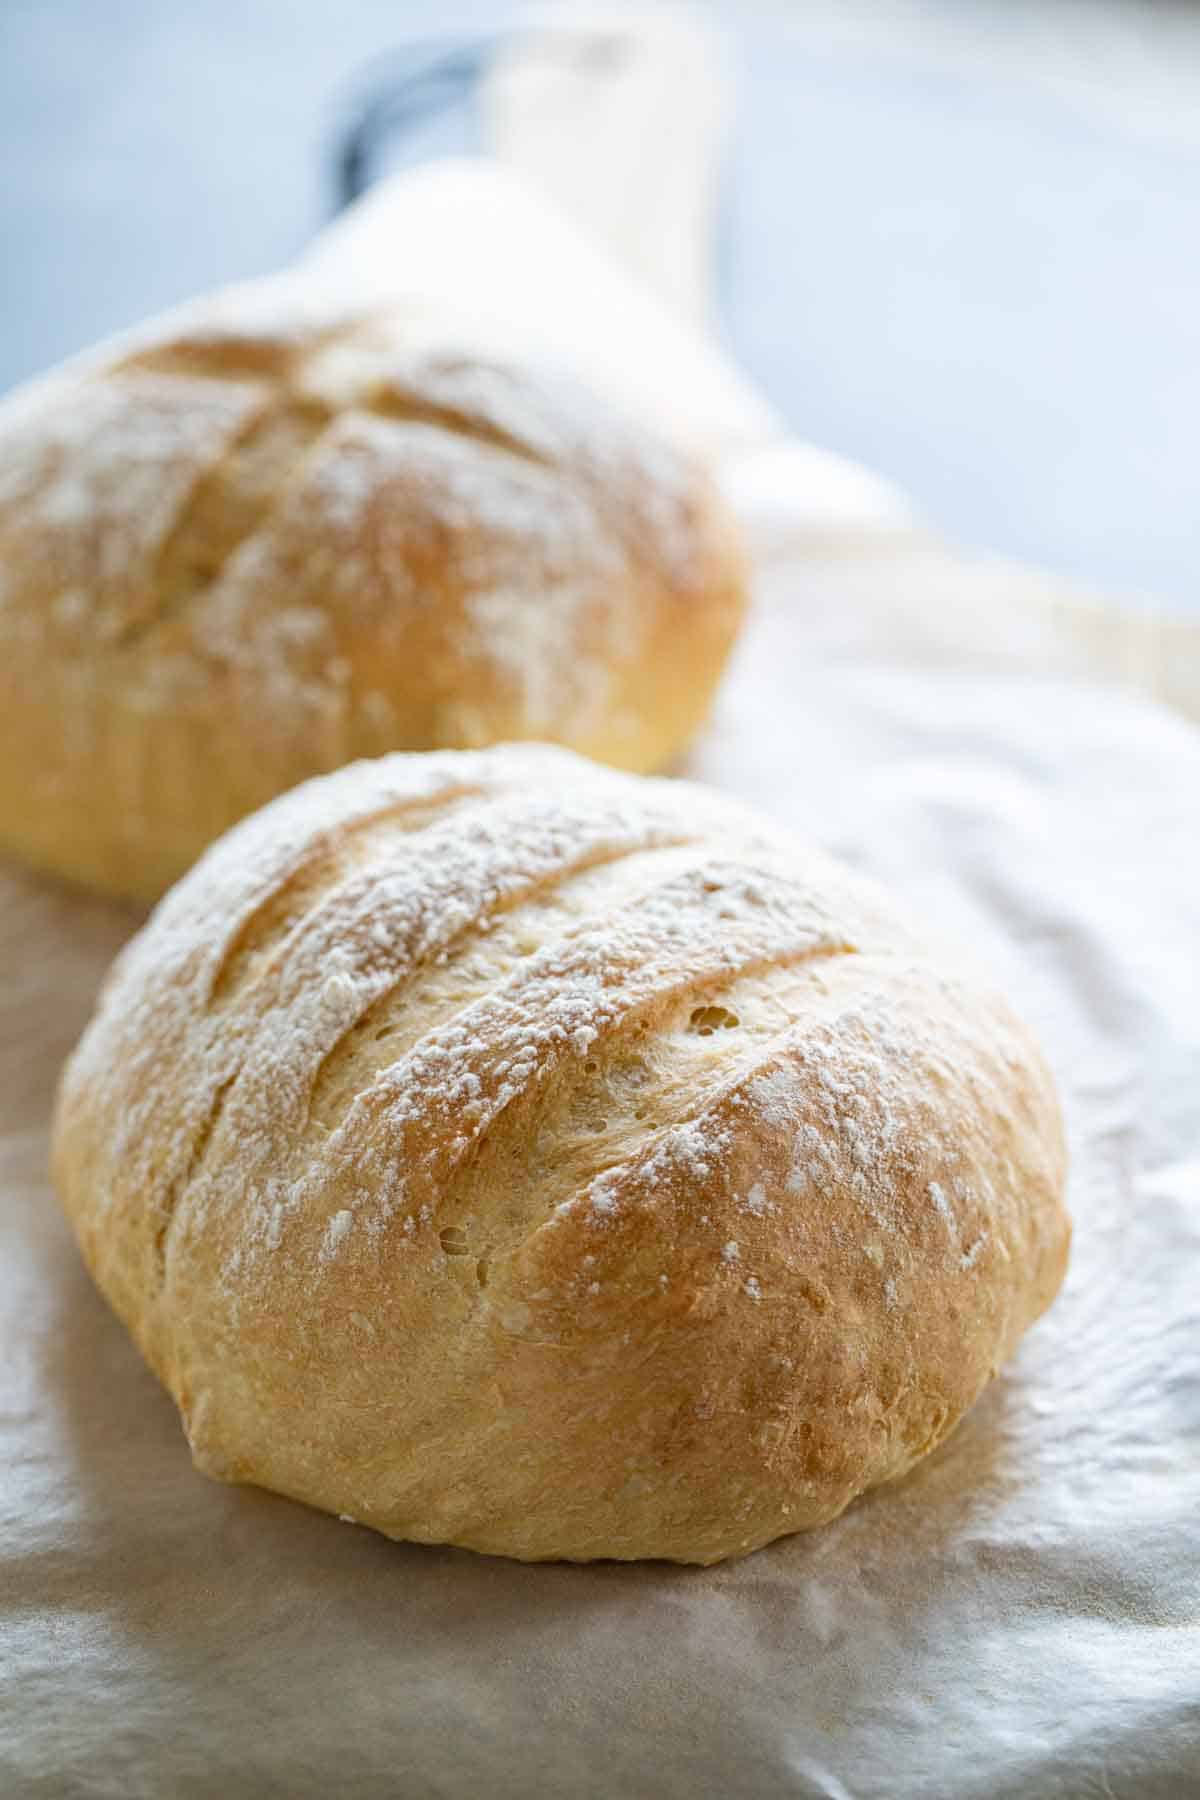 https://www.tasteandtellblog.com/wp-content/uploads/2021/10/Artisan-Bread-6.jpg